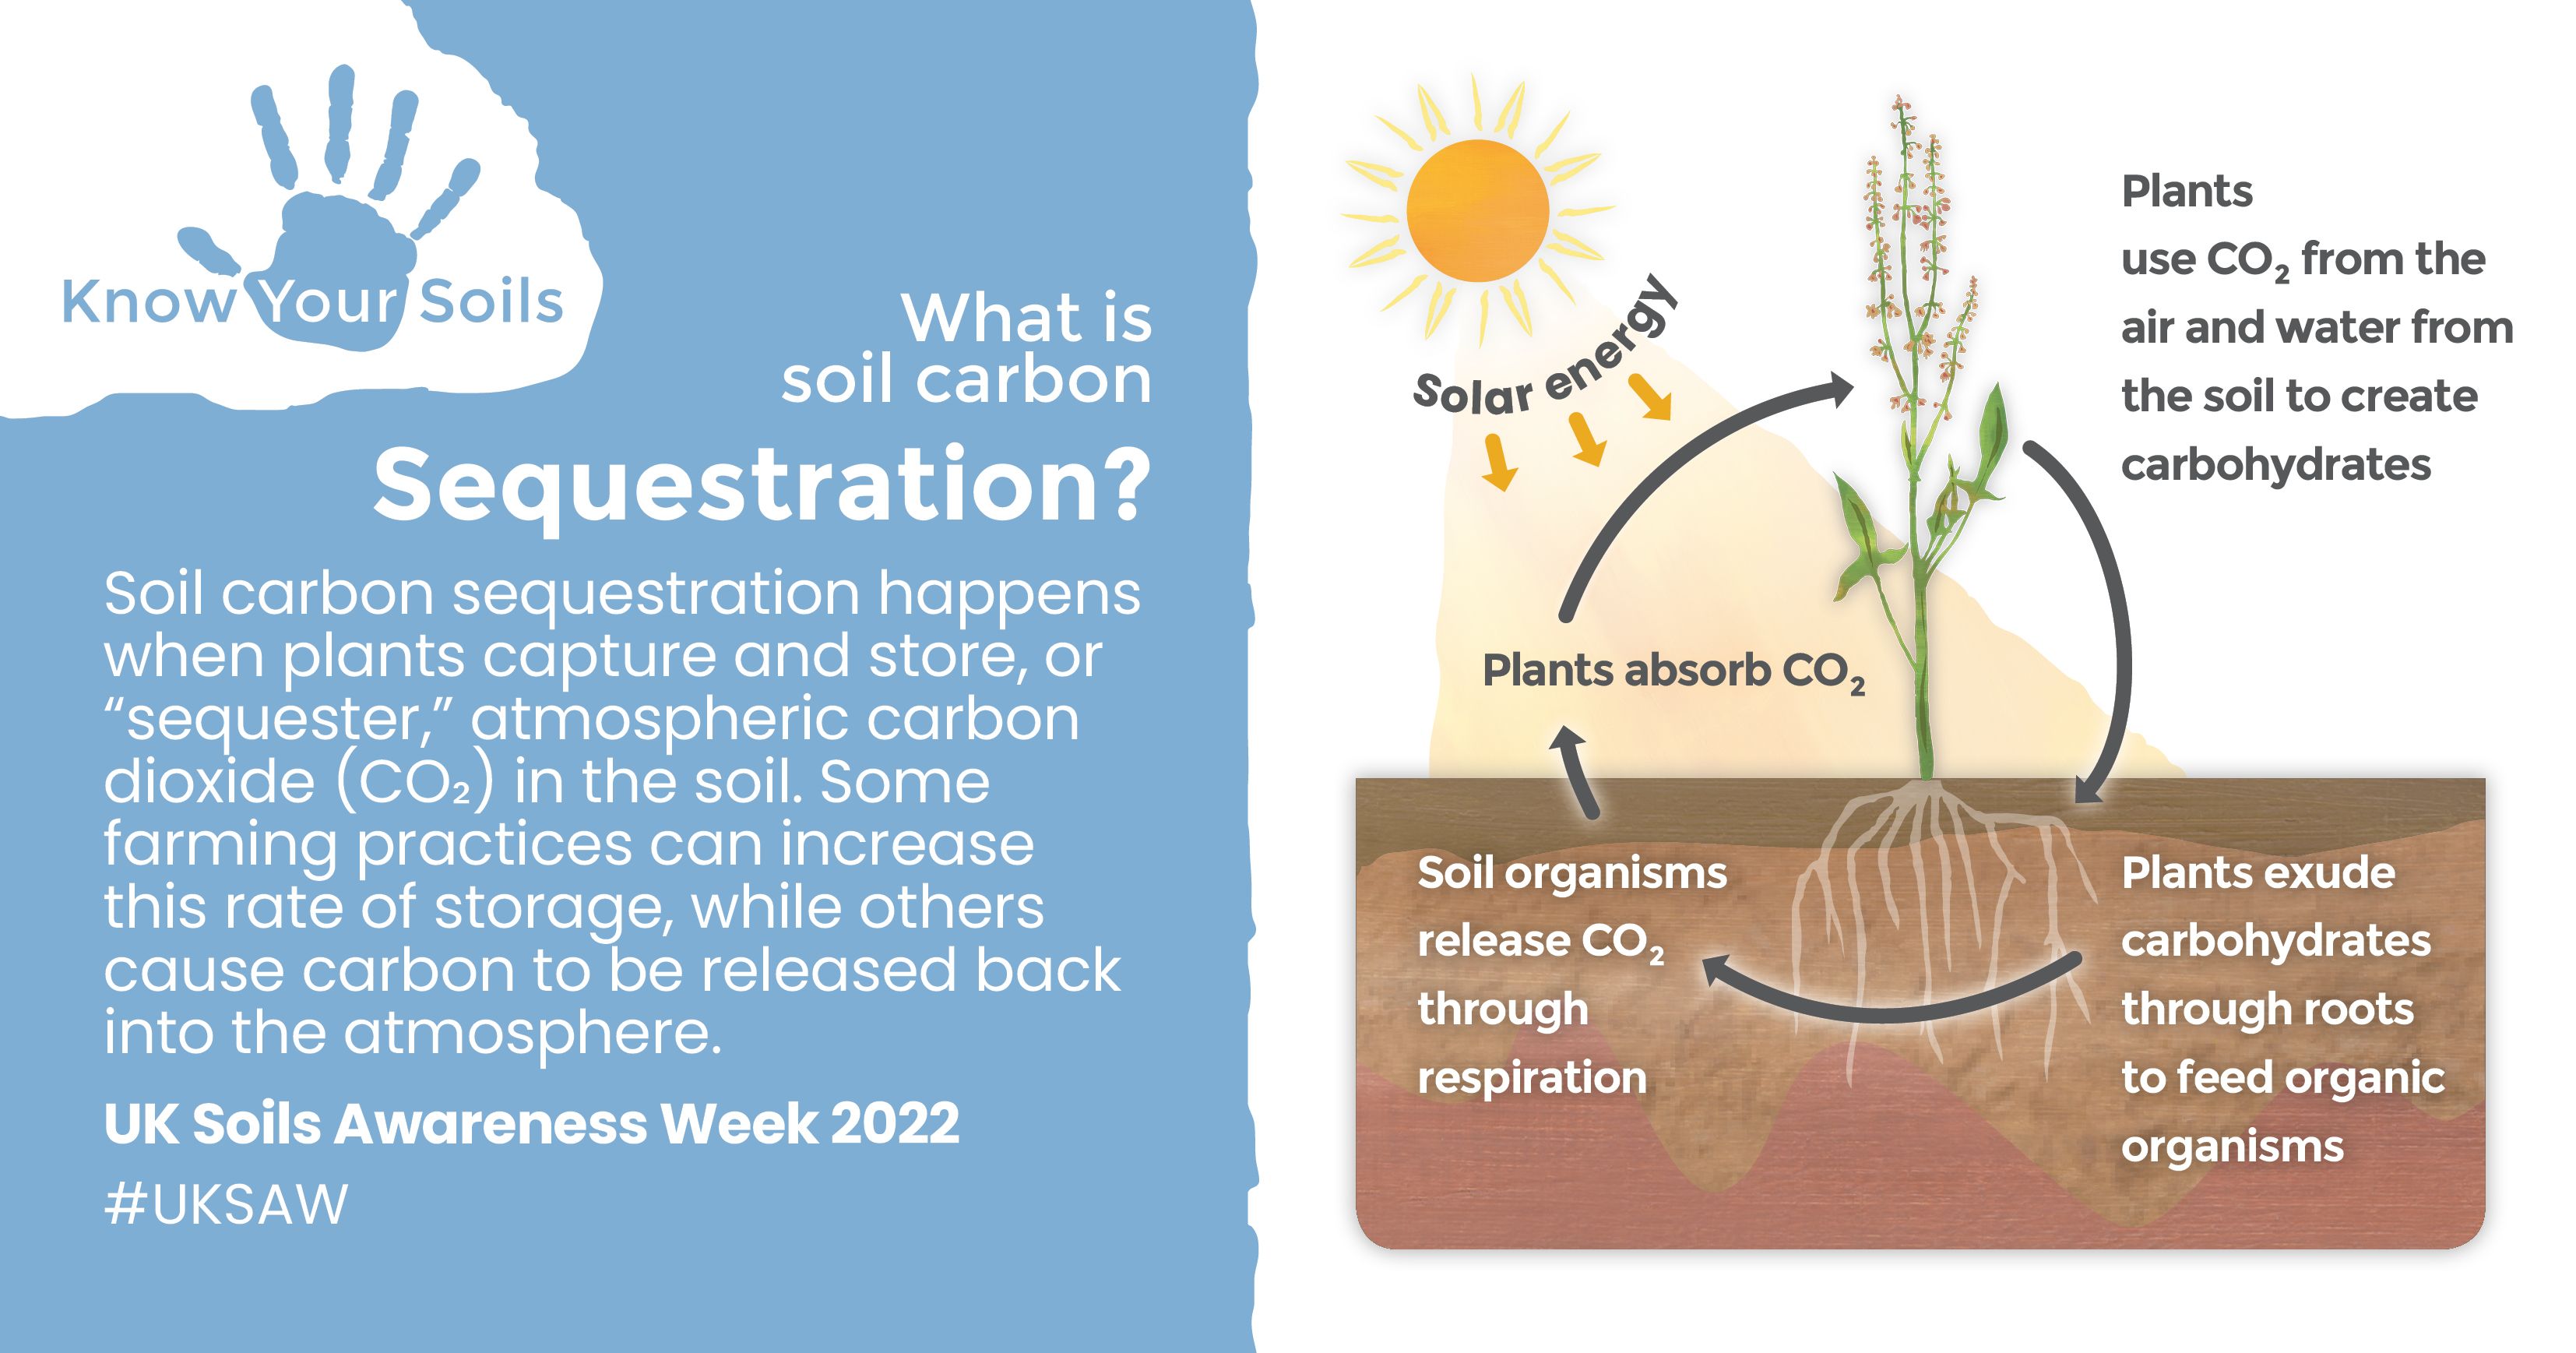 Soil carbon sequestration